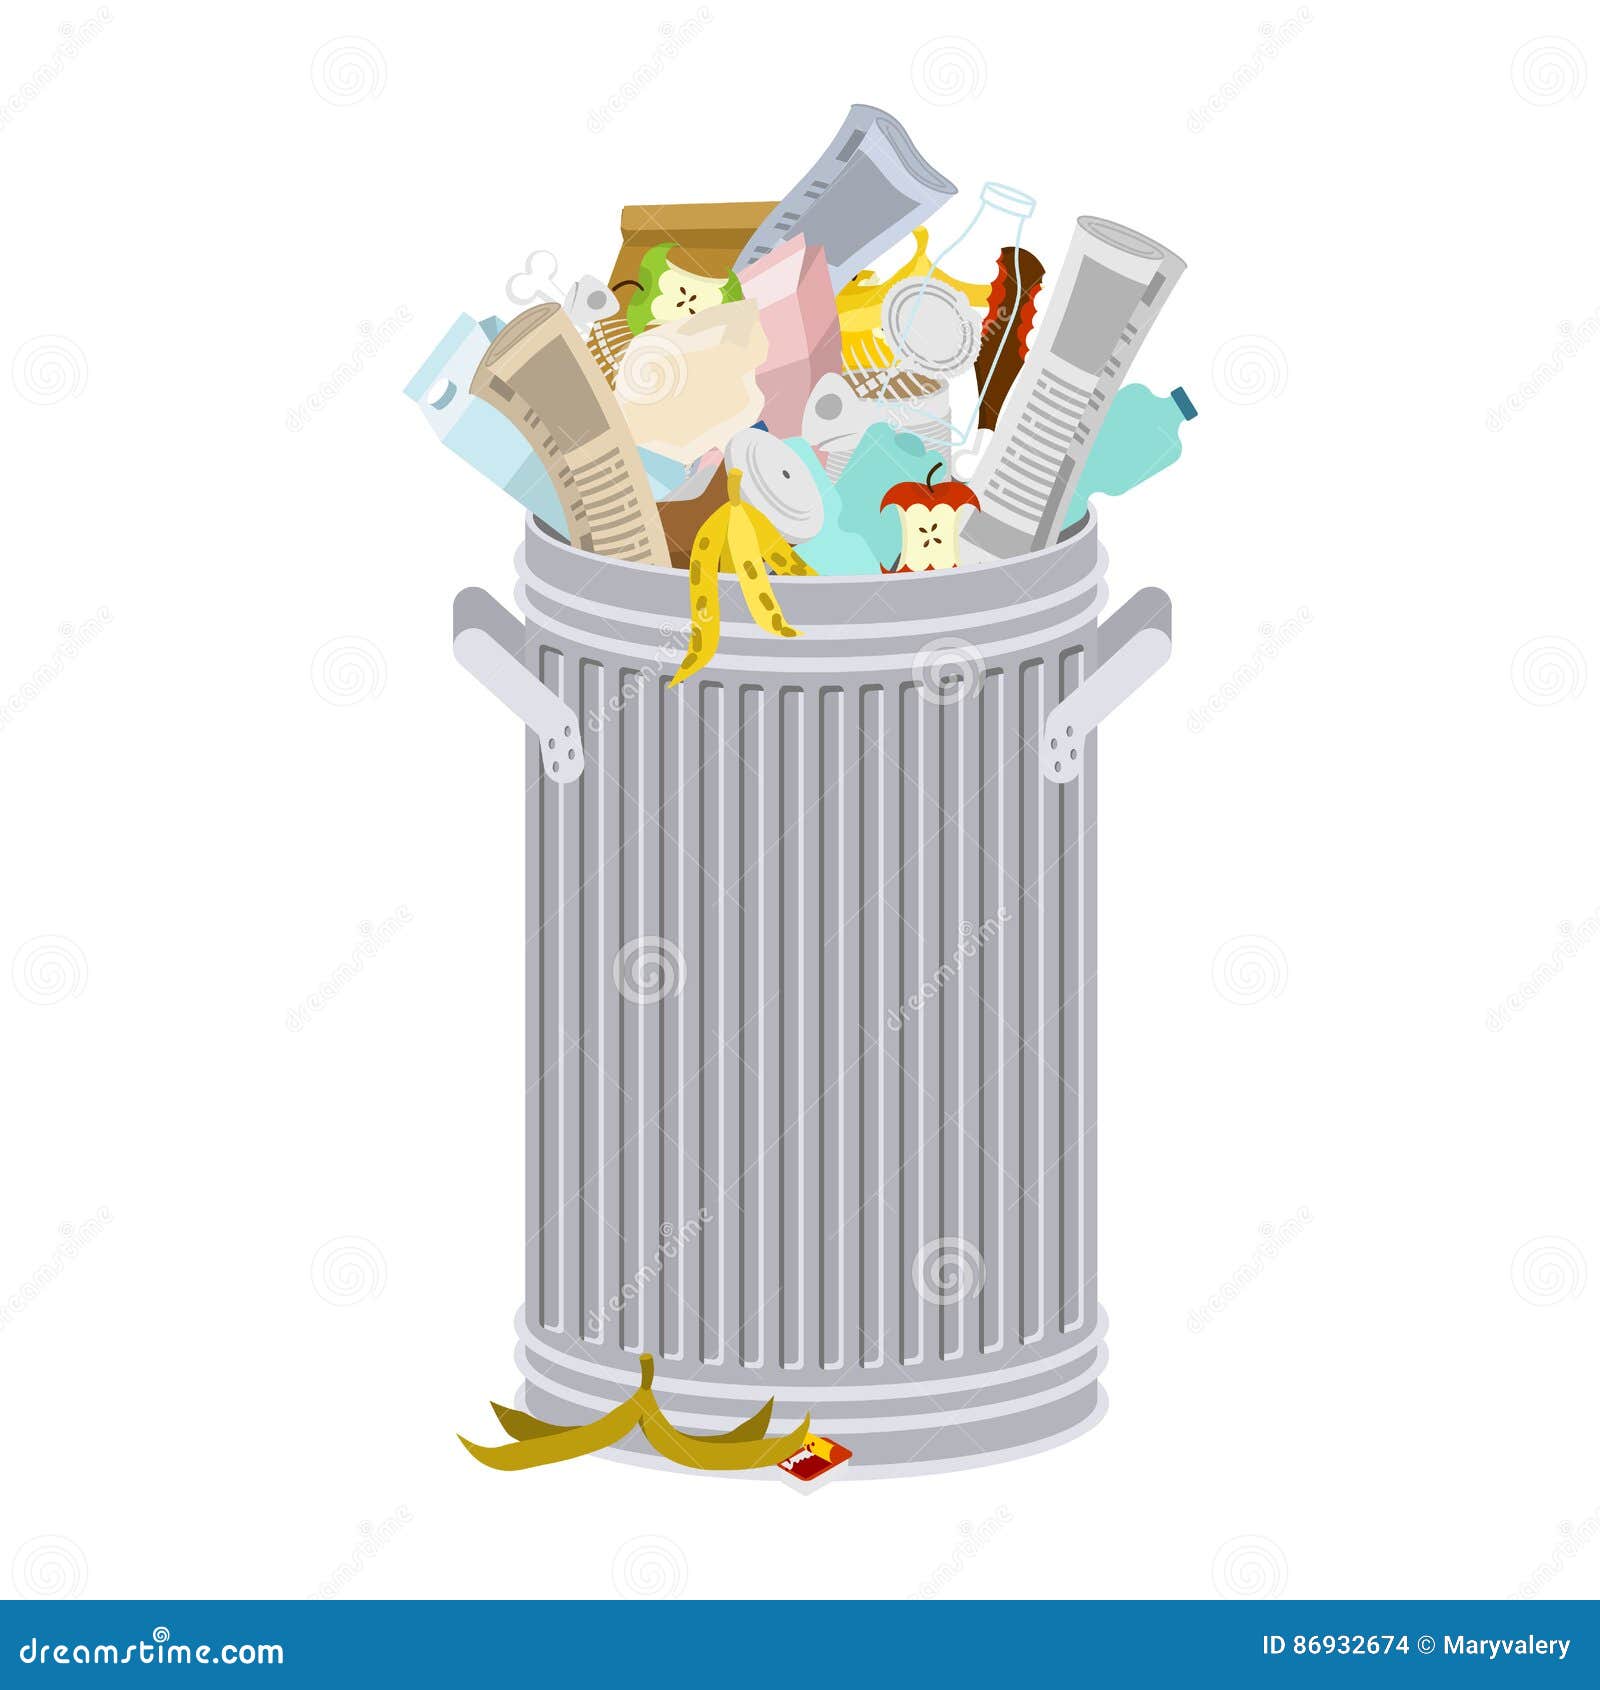 Trash bin full of garbage, Stock vector